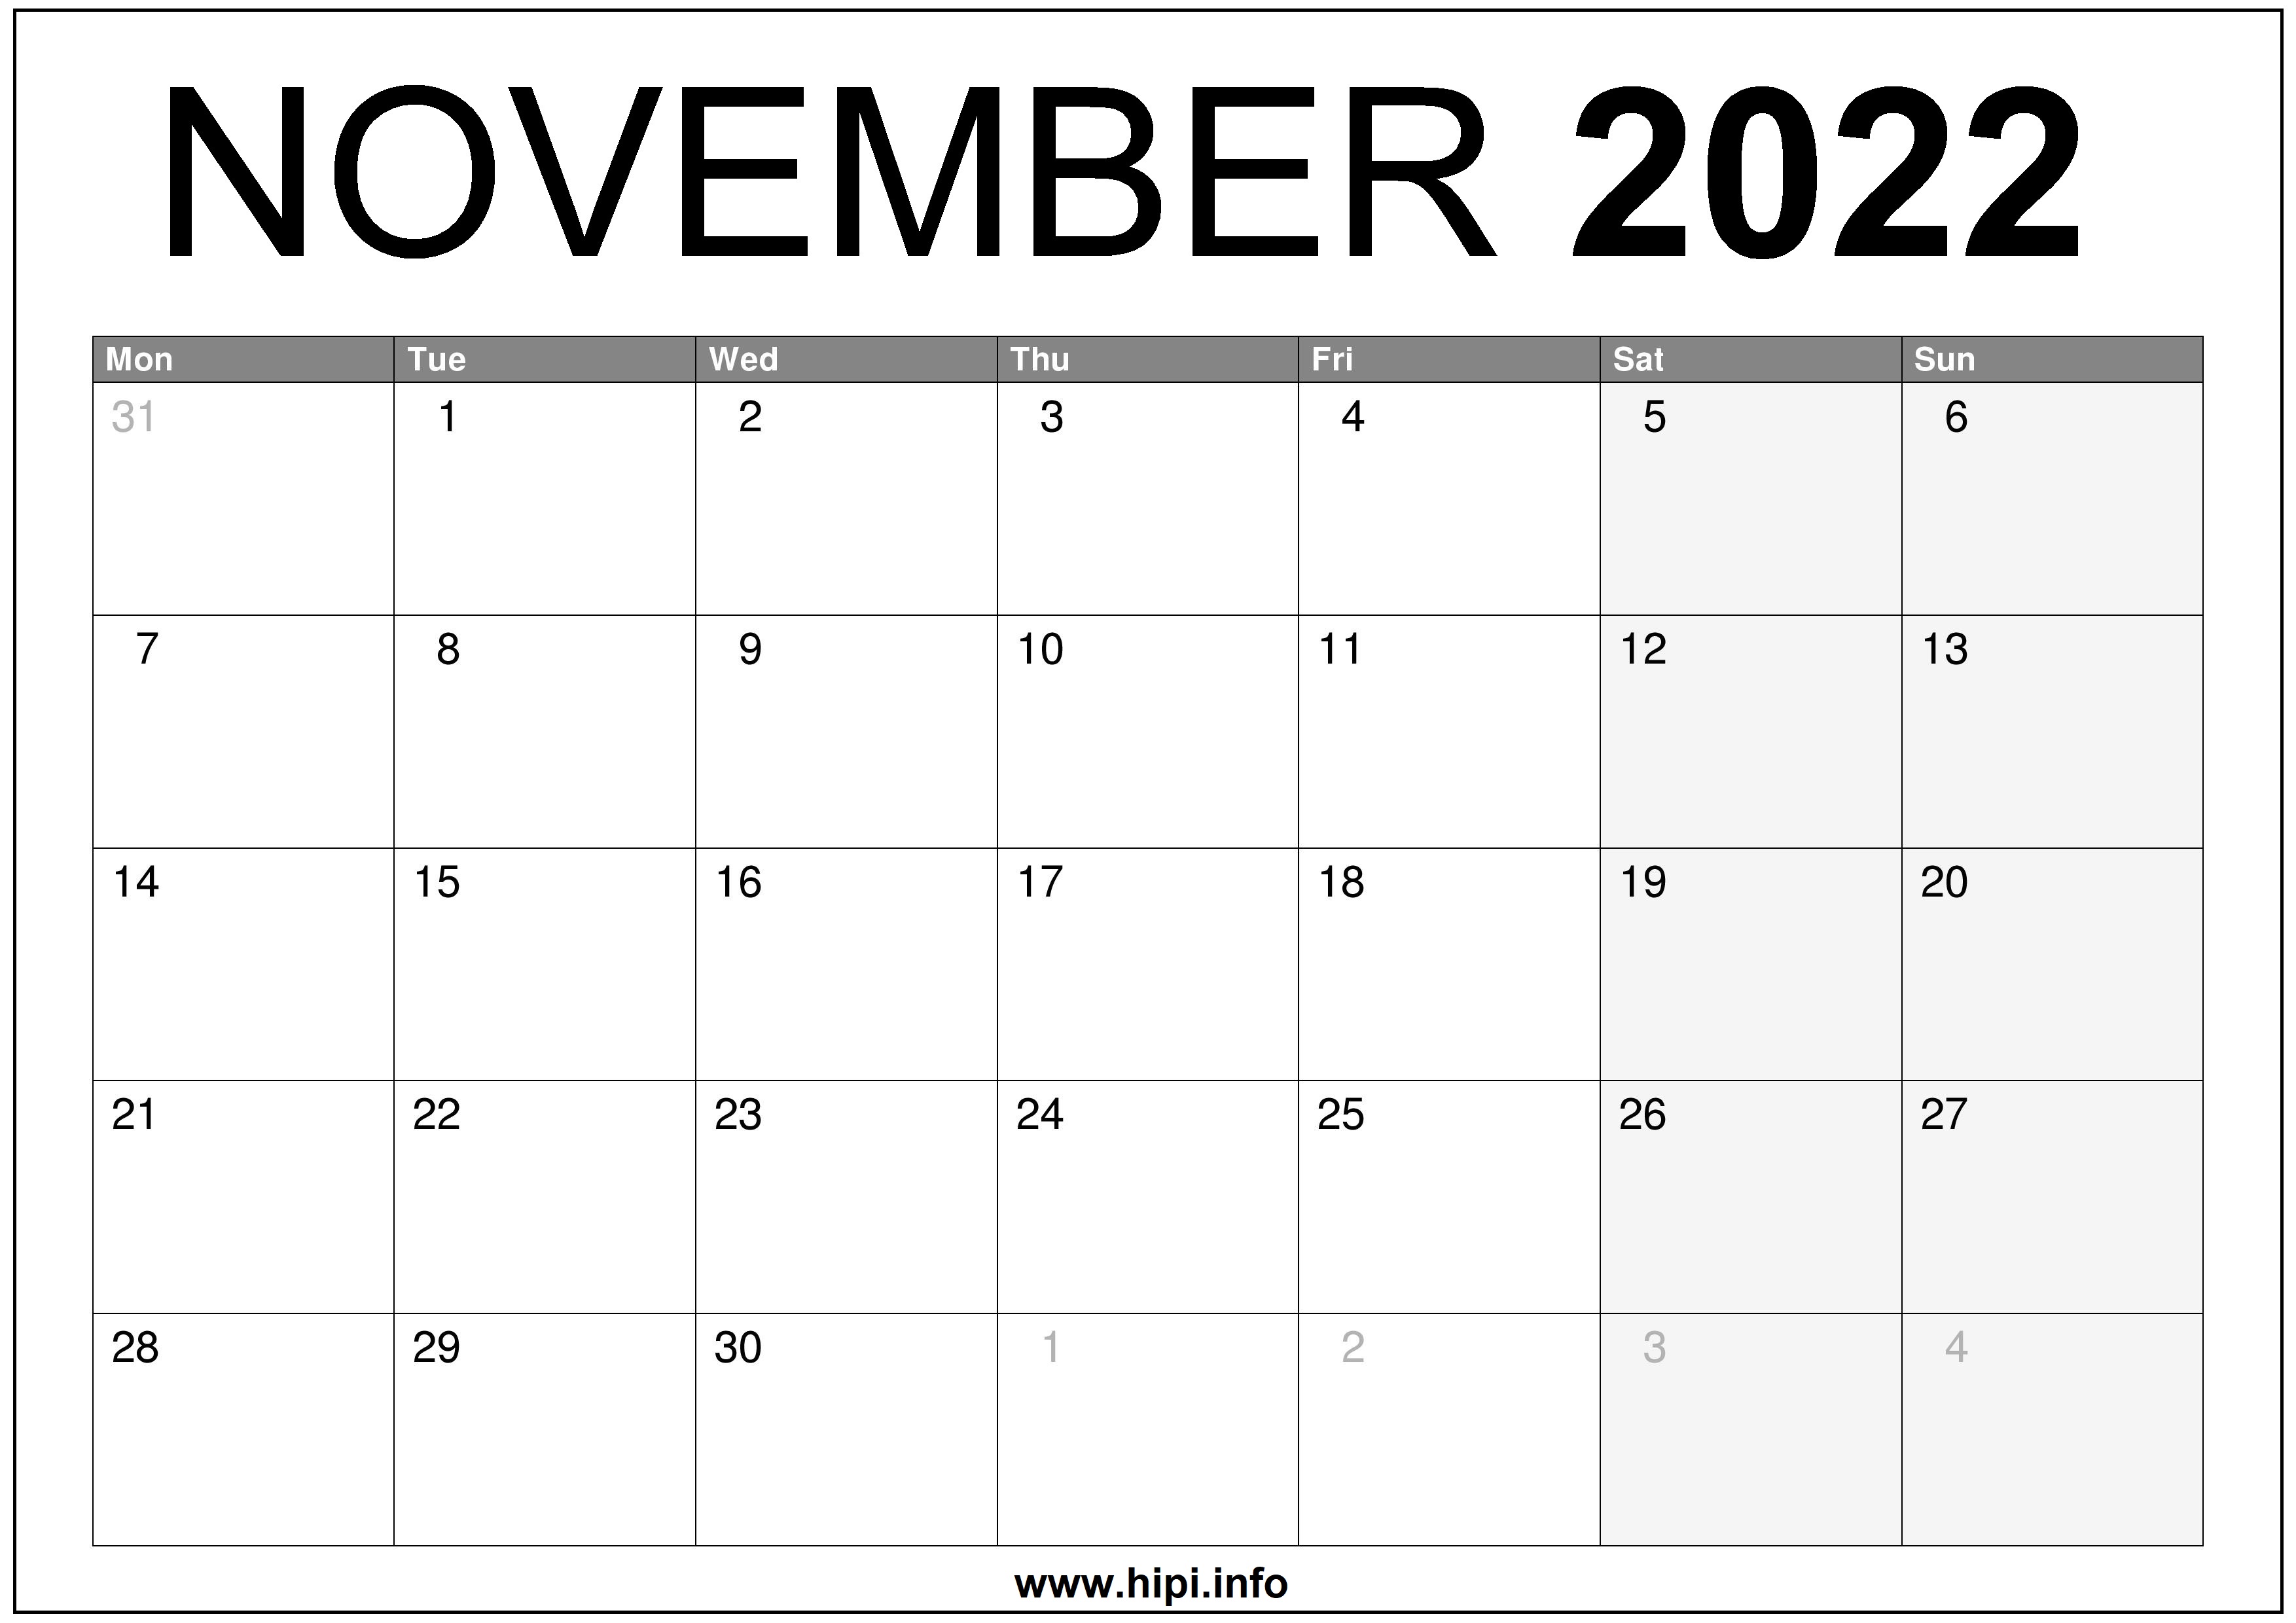 Printable Calendar 2022 November November 2022 Uk Calendar Printable Free - Hipi.info | Calendars Printable  Free